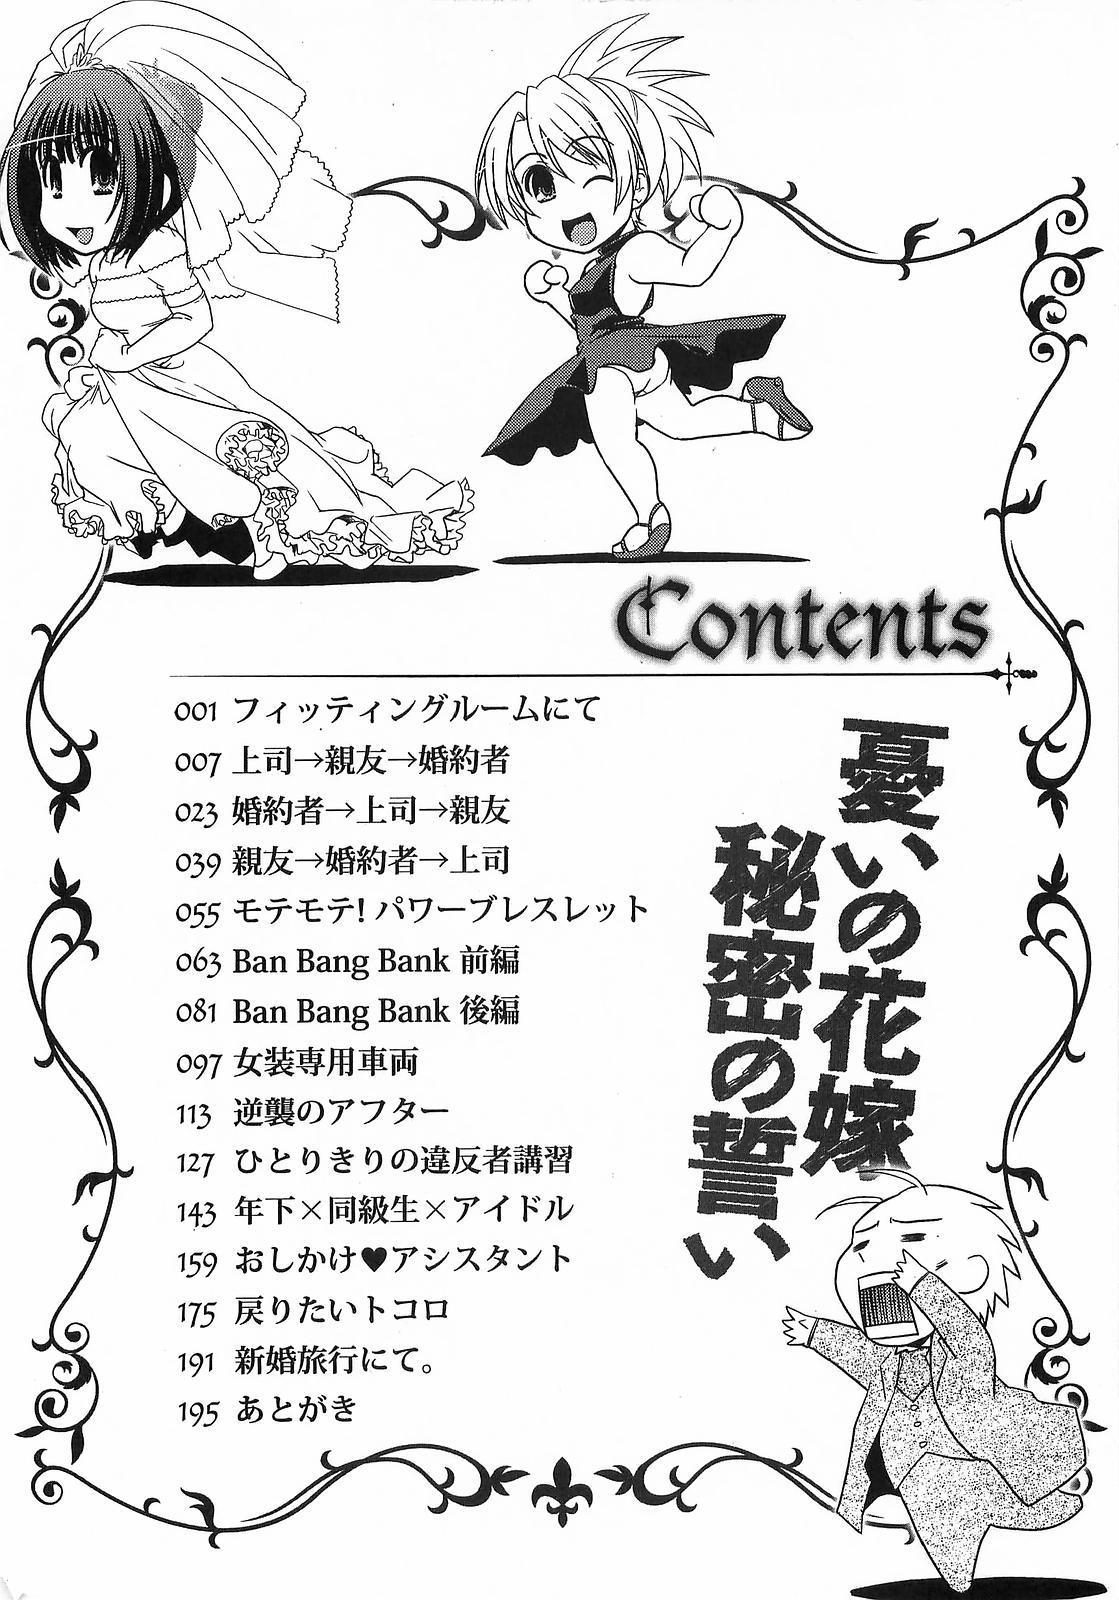 Alt Urei no Hanayome Himitsu no Chikai High Definition - Page 8